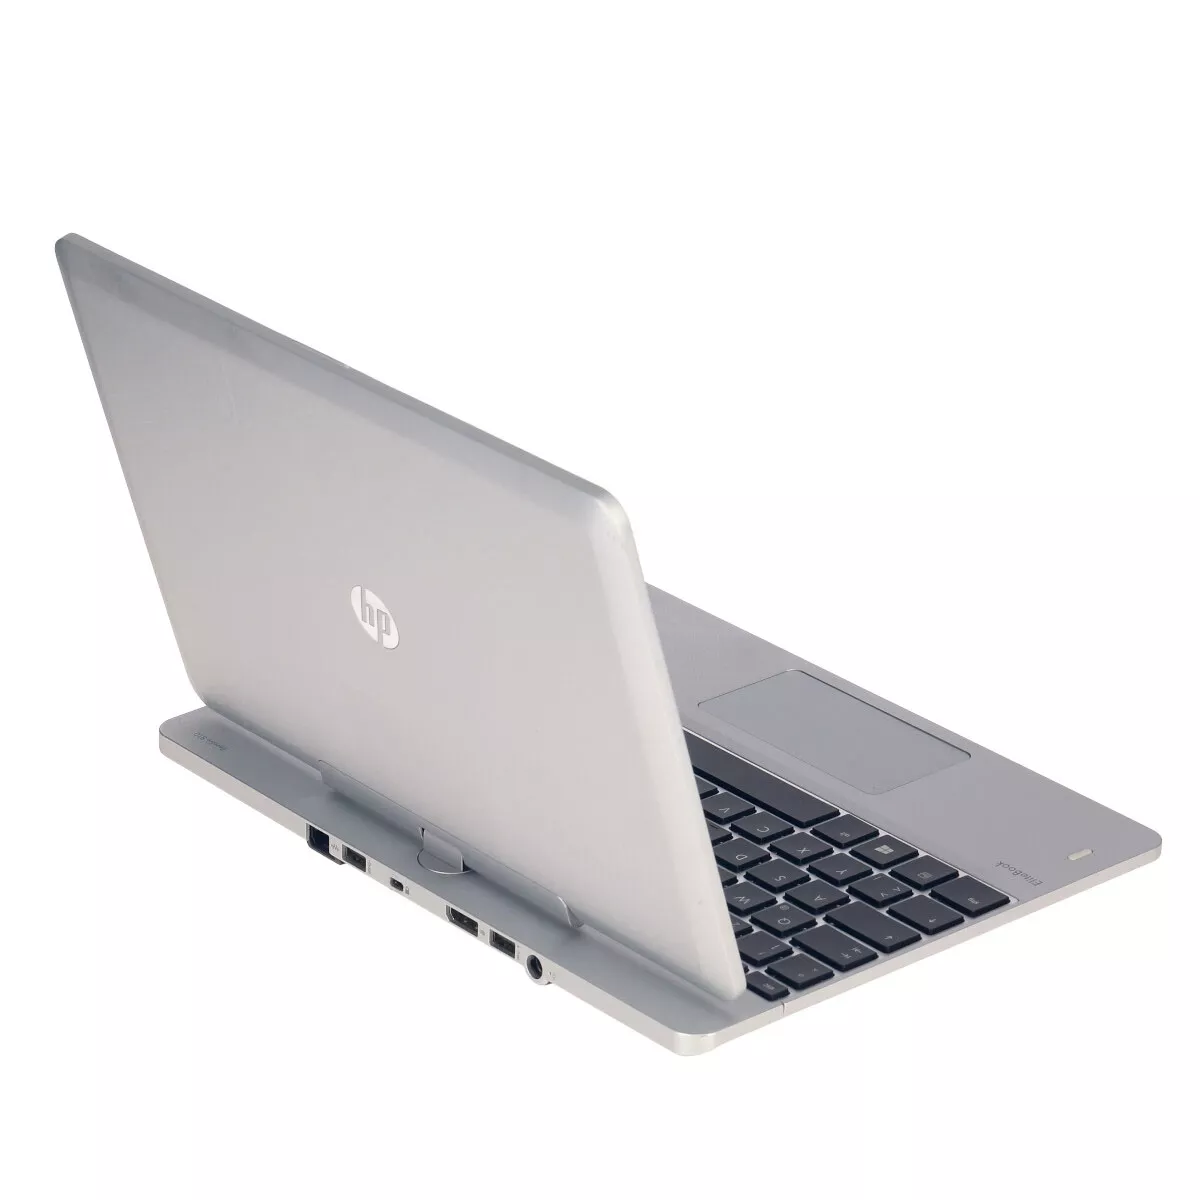 HP EliteBook Revolve 810 G2 Core i5 4300U 1,9 GHz Webcam A